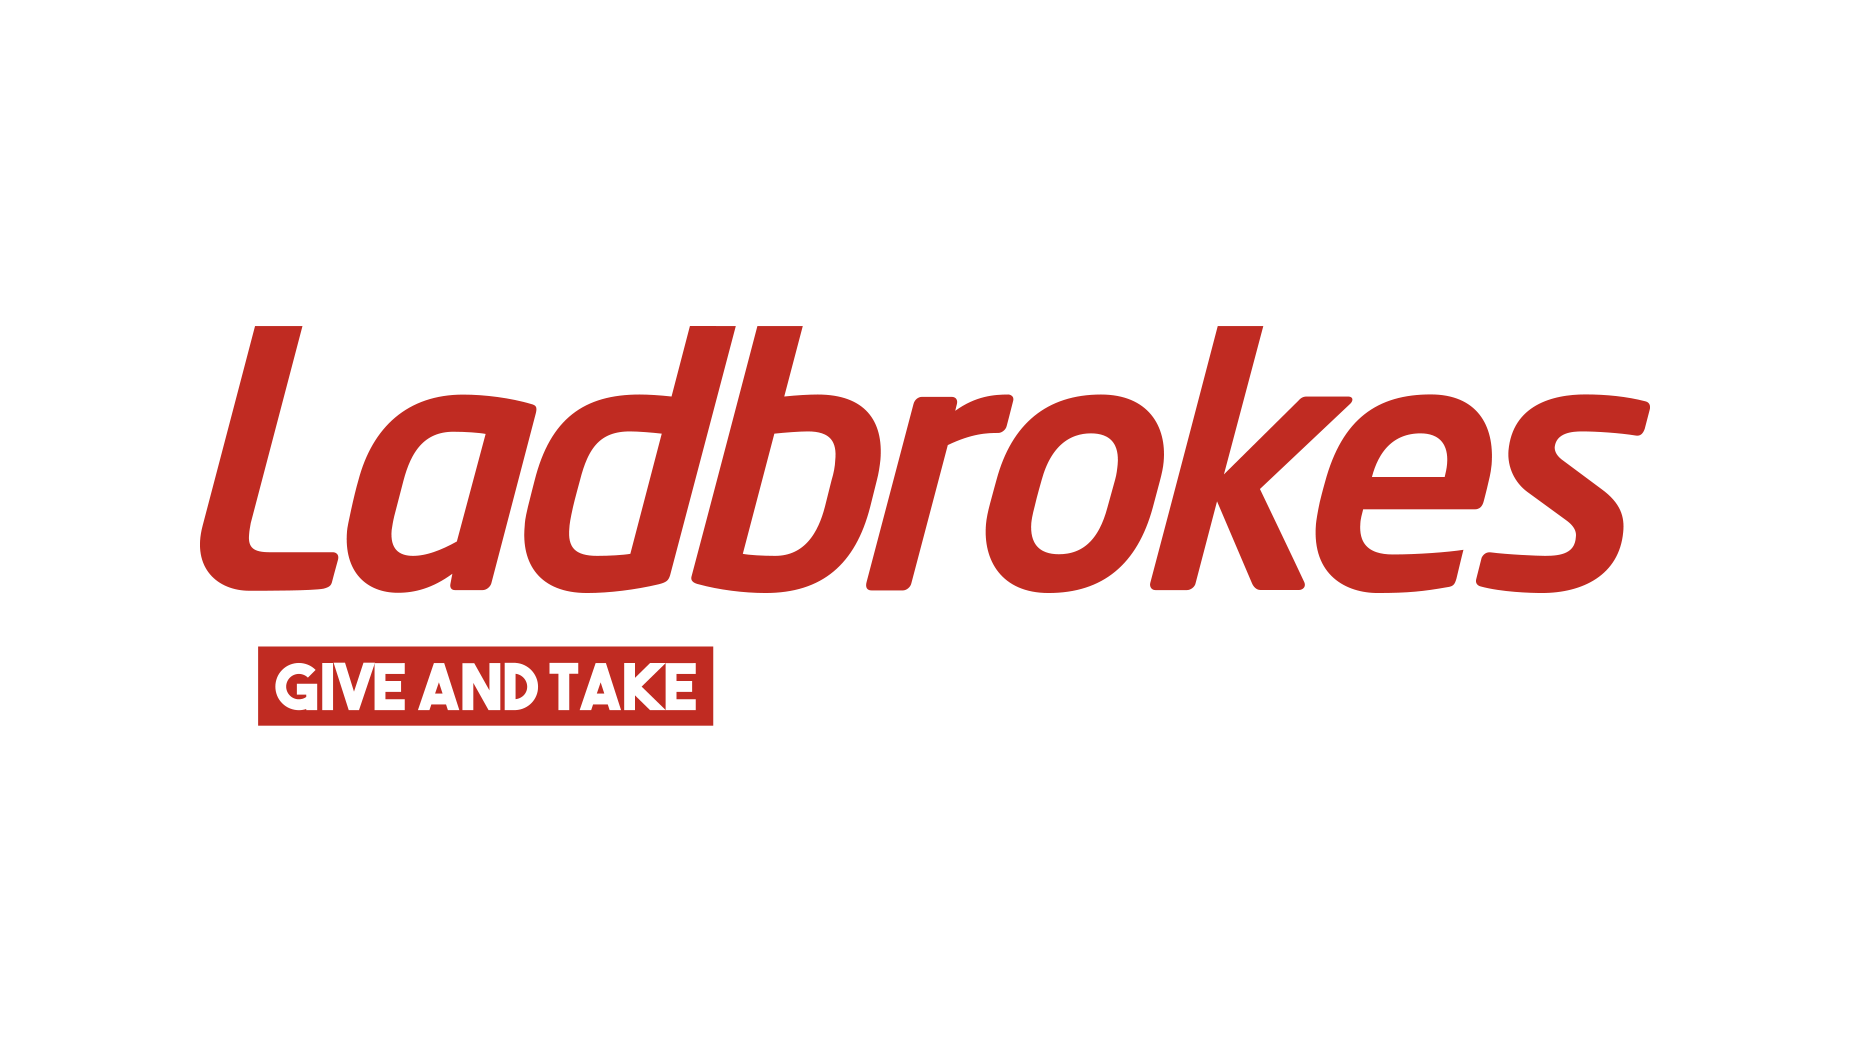 Ladbrokes Foundation